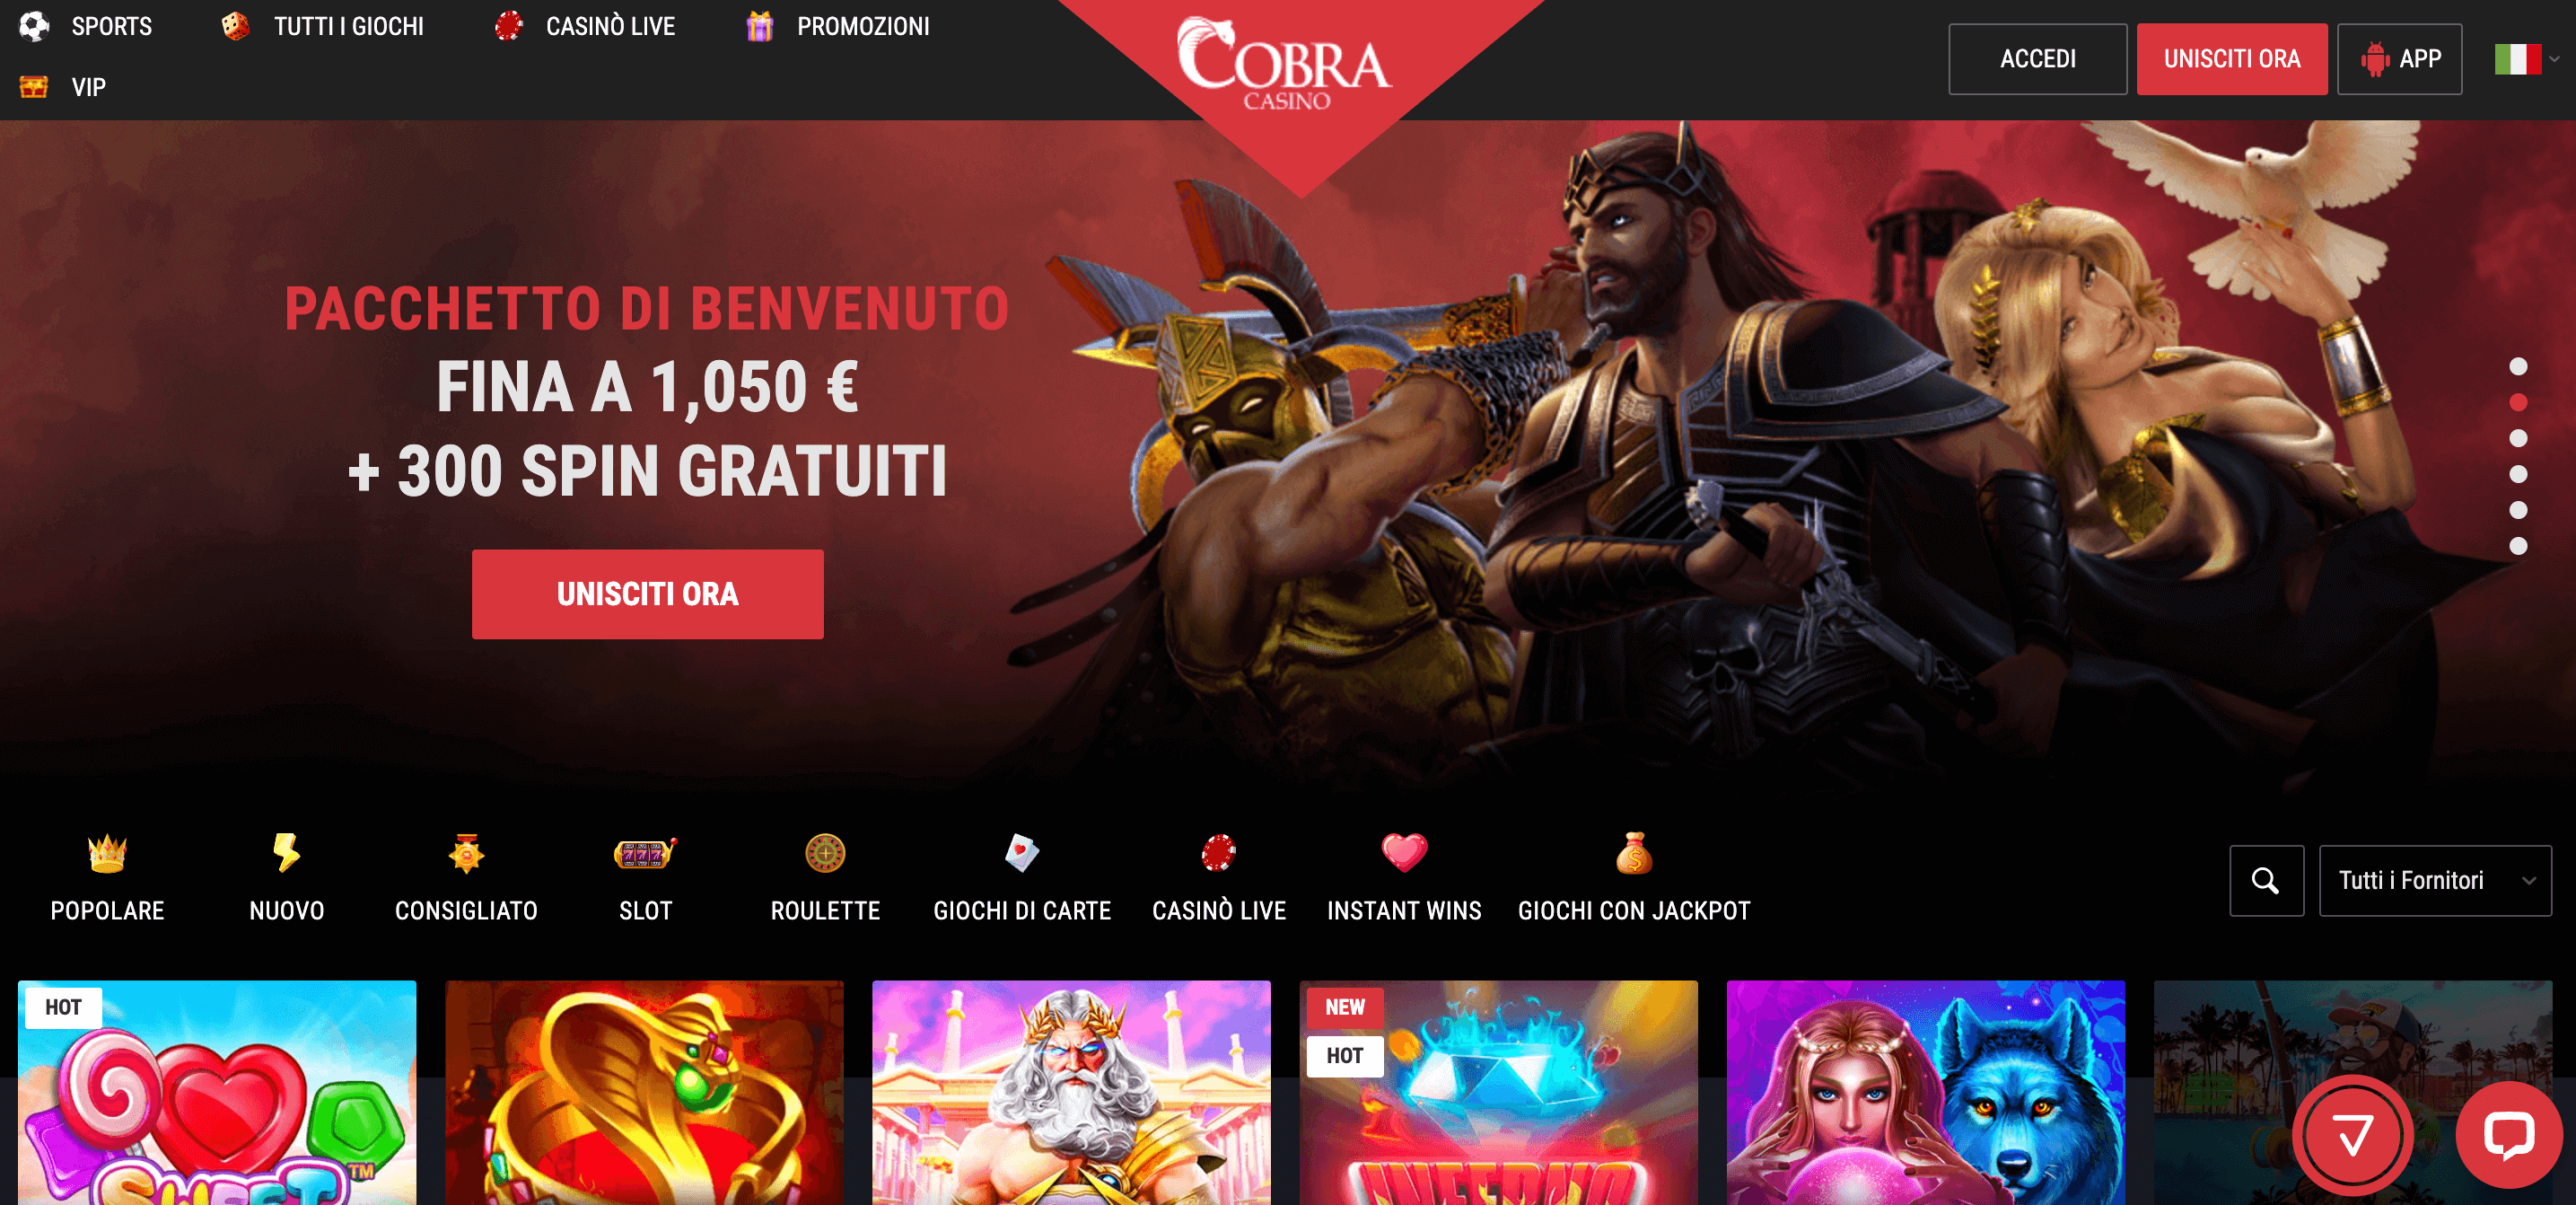 Cobra Casino Home